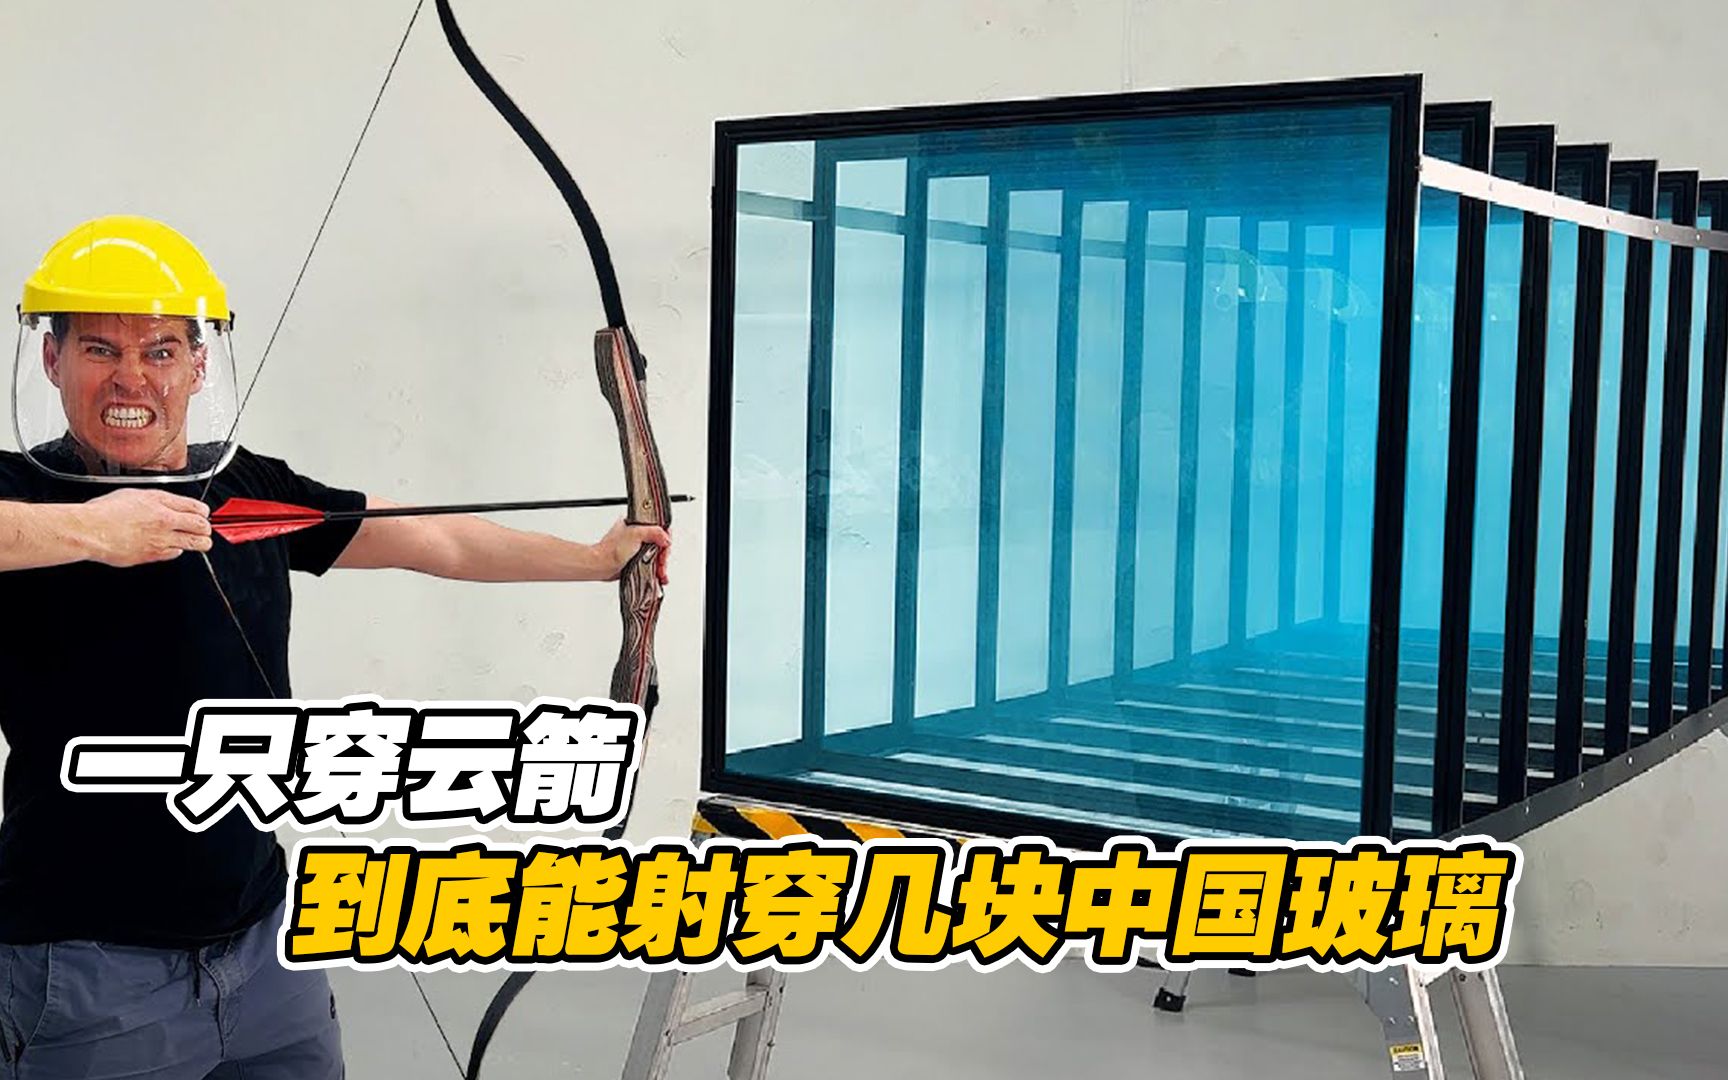 外国小伙挑战中国玻璃，打算用弓箭射击，结果到底如何？